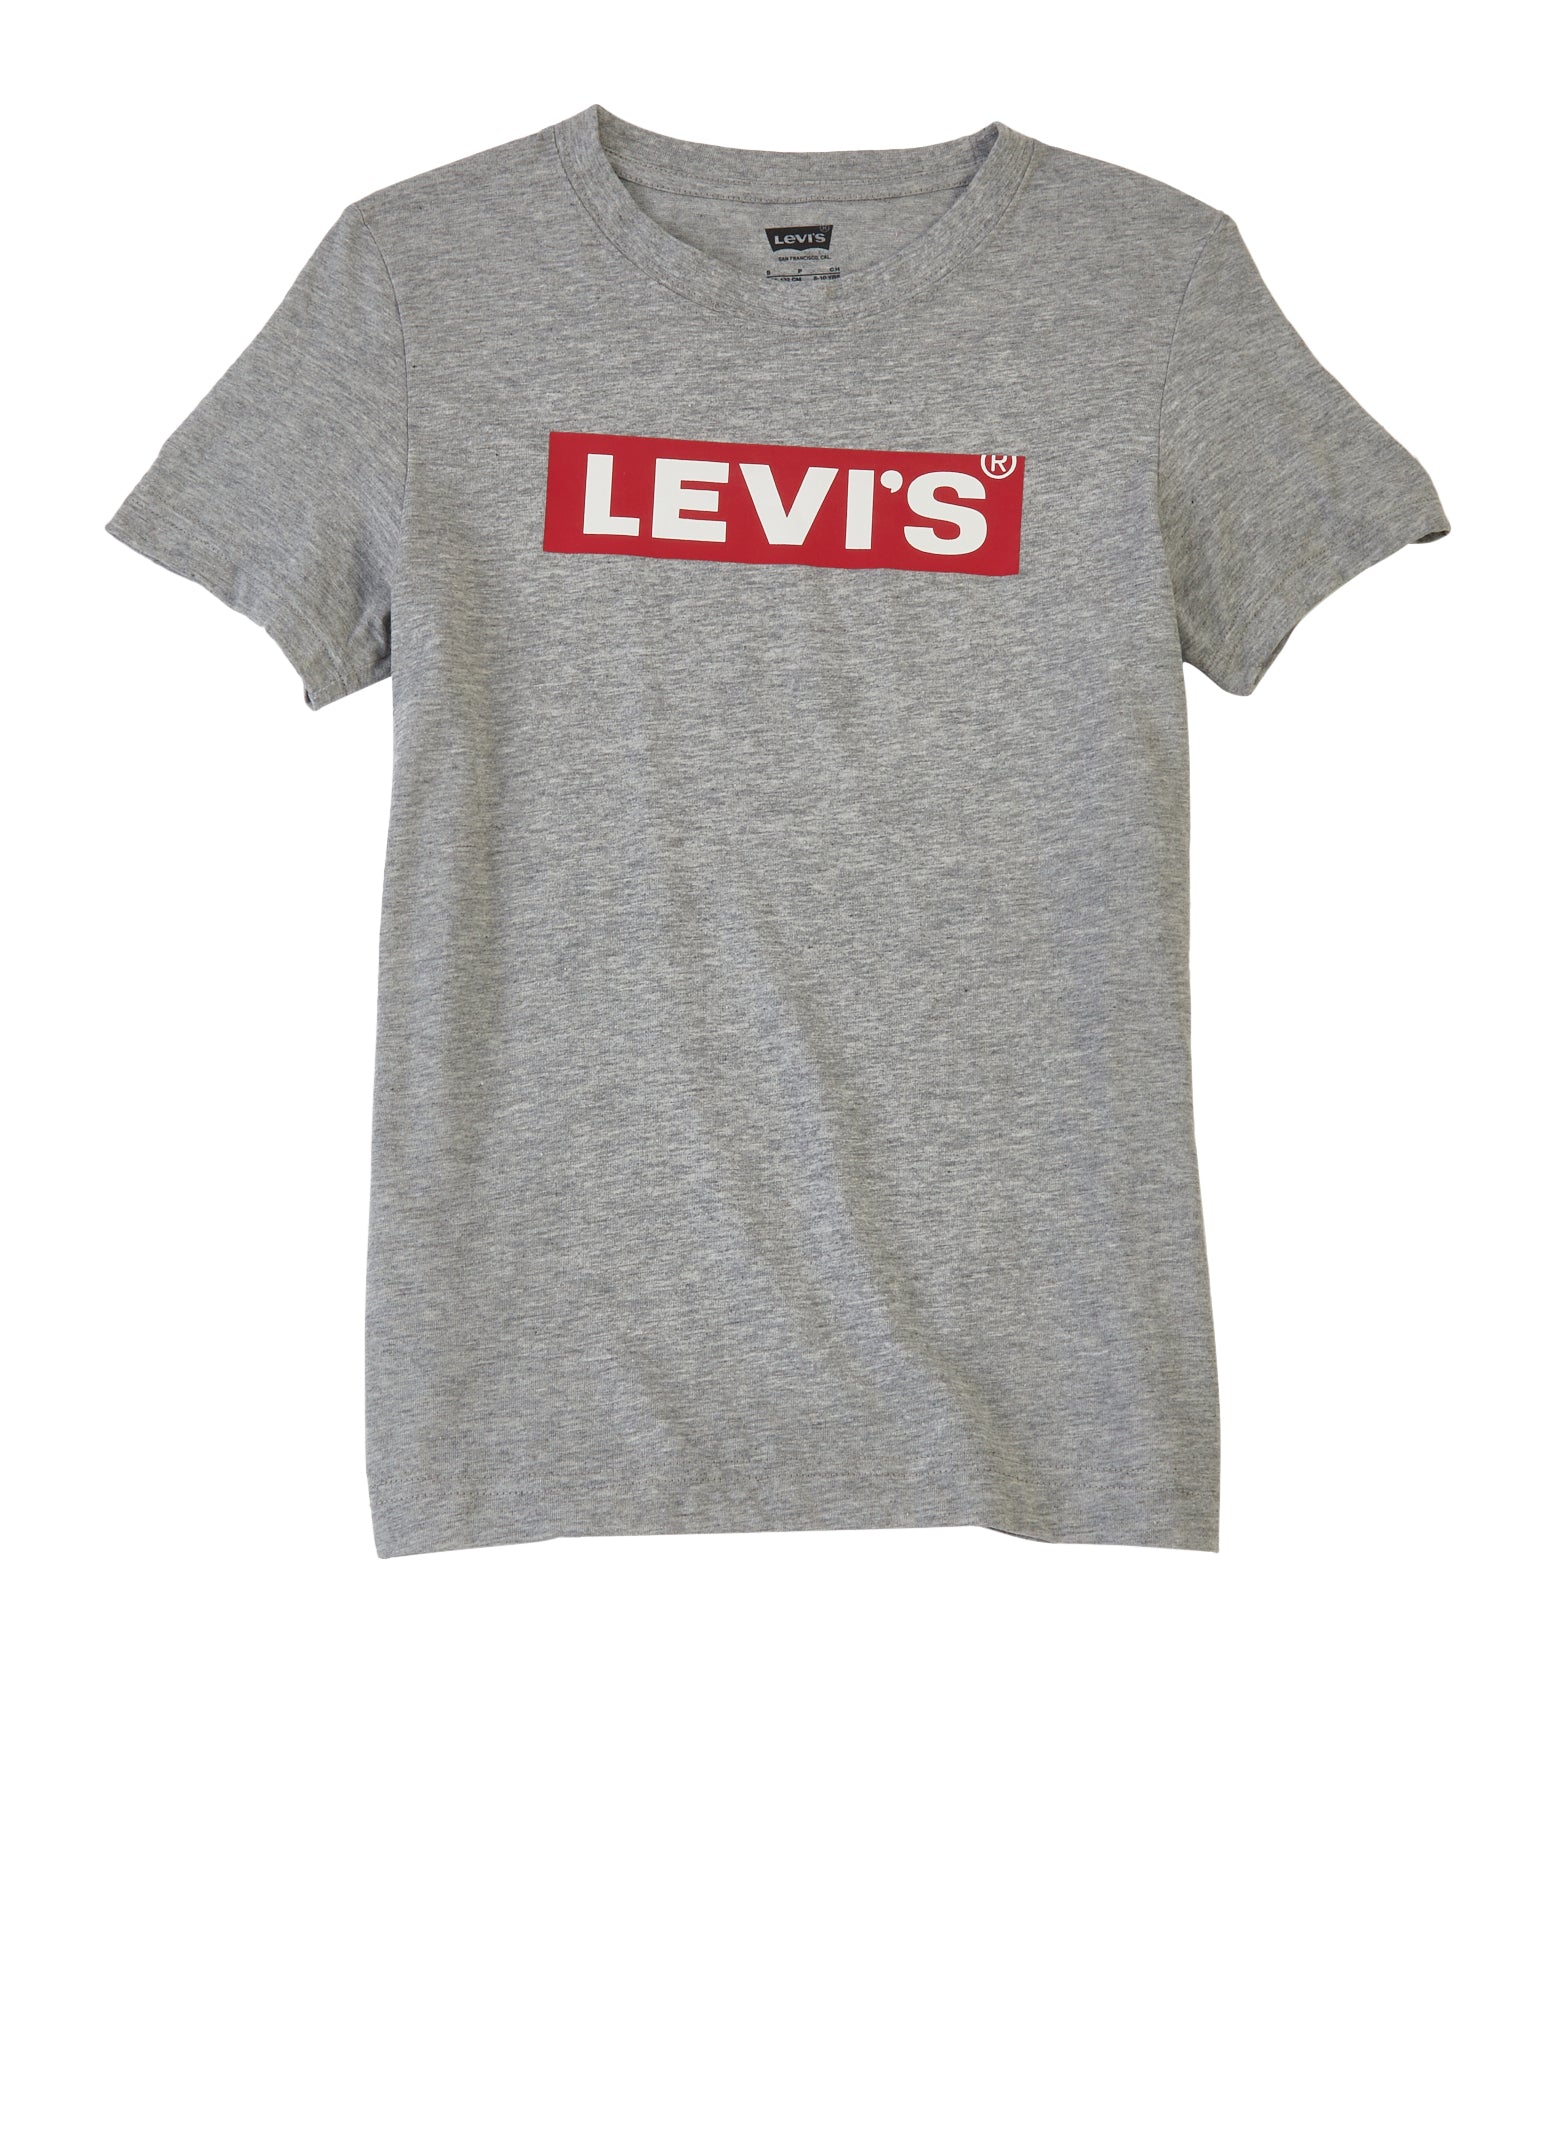 Boys Levis Short Sleeve Crew Neck T Shirt, Grey,